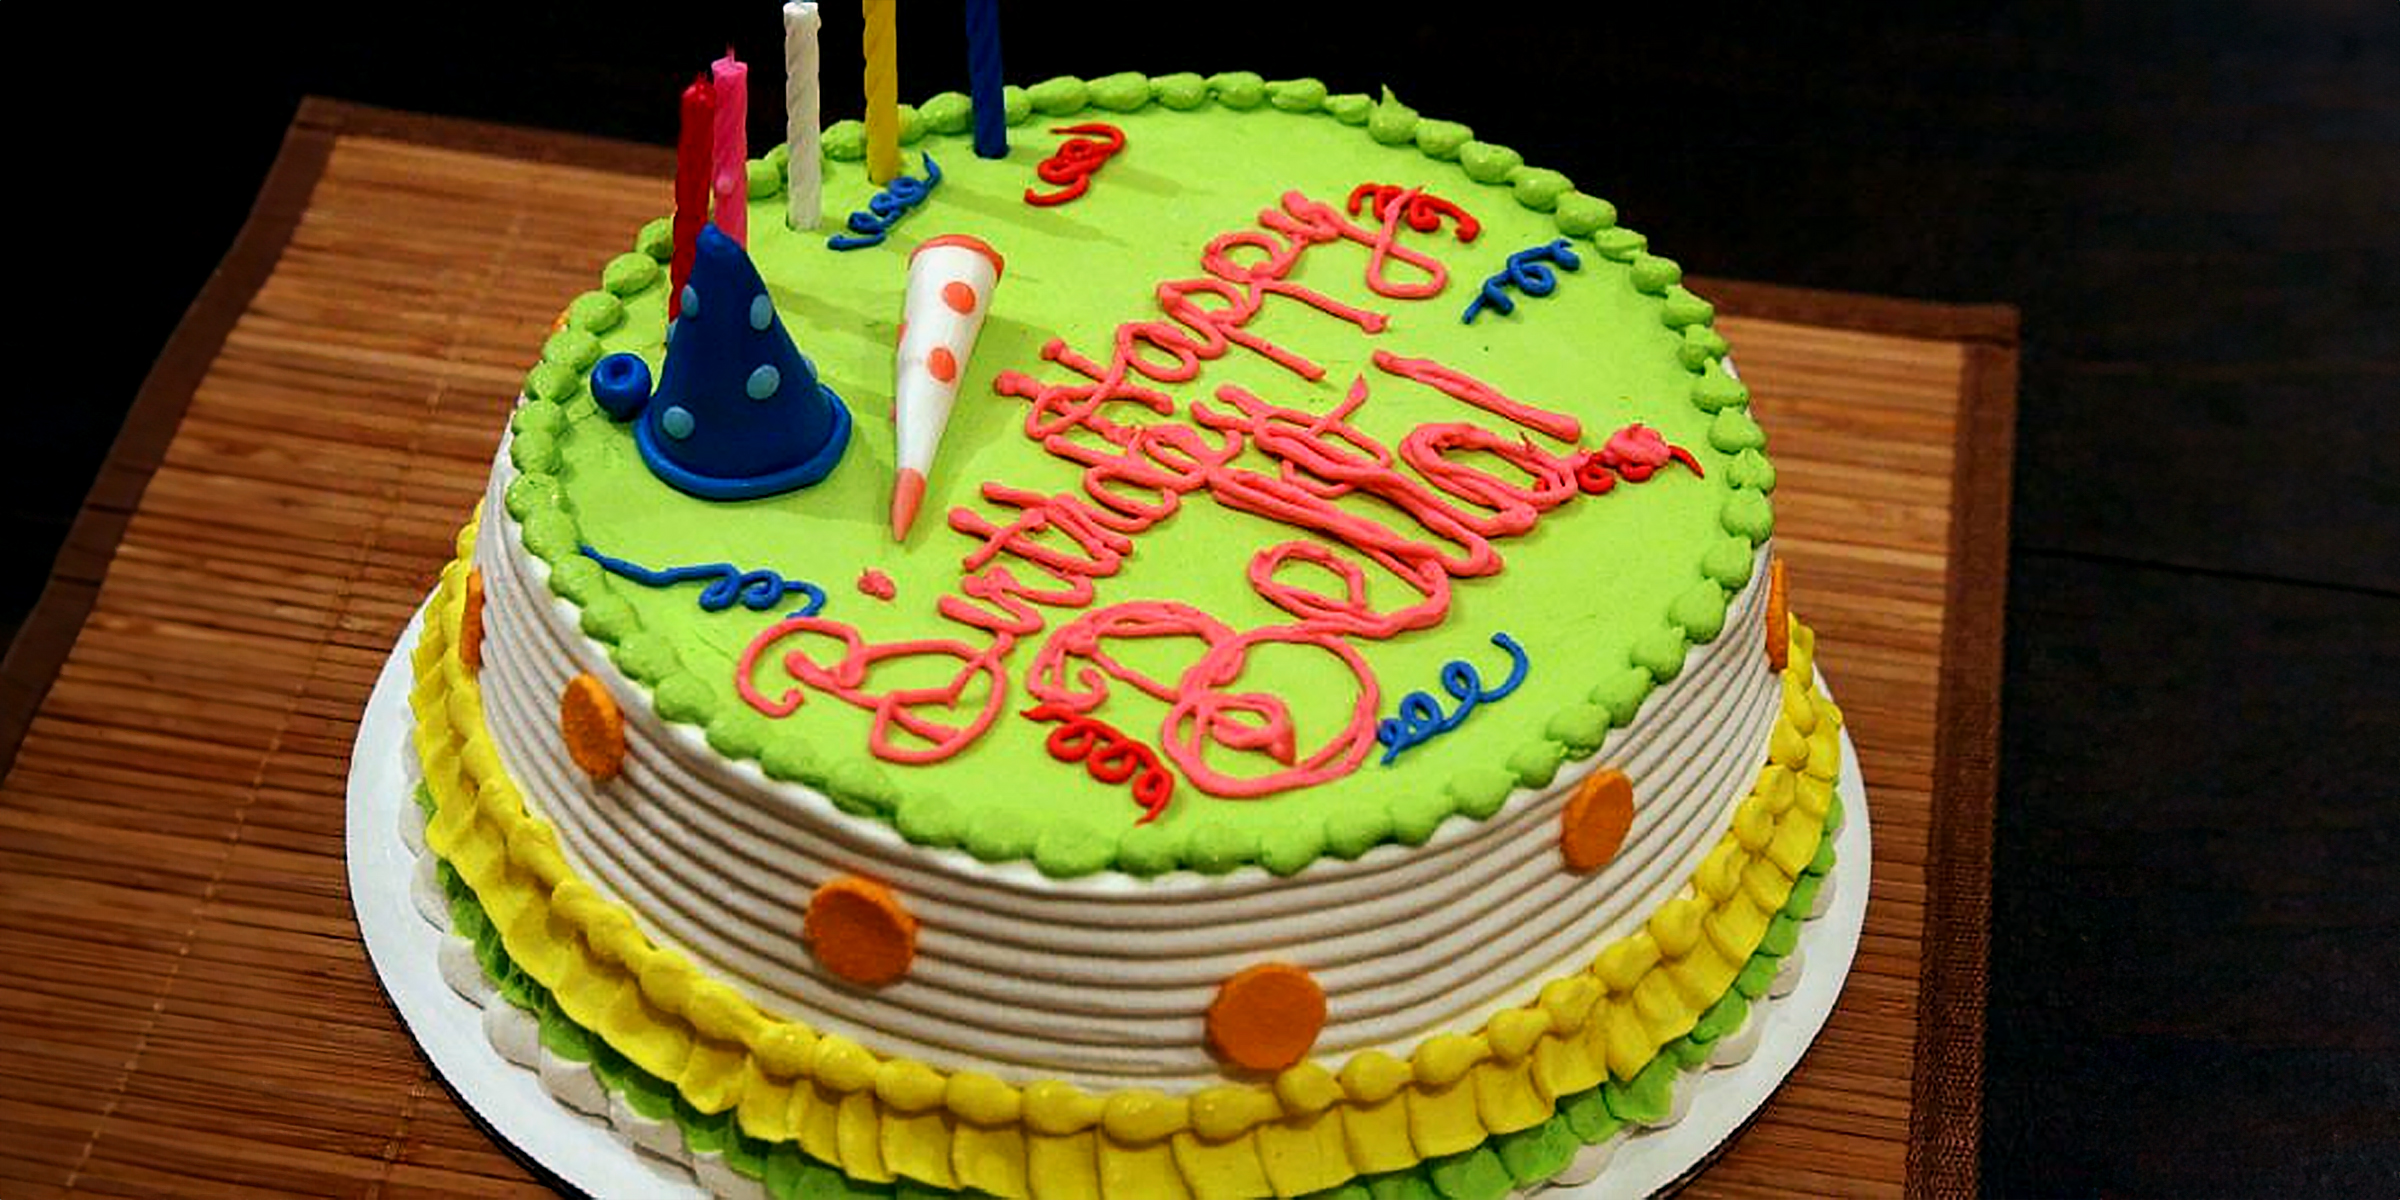 Gâteau d'anniversaire | Source : Flickr